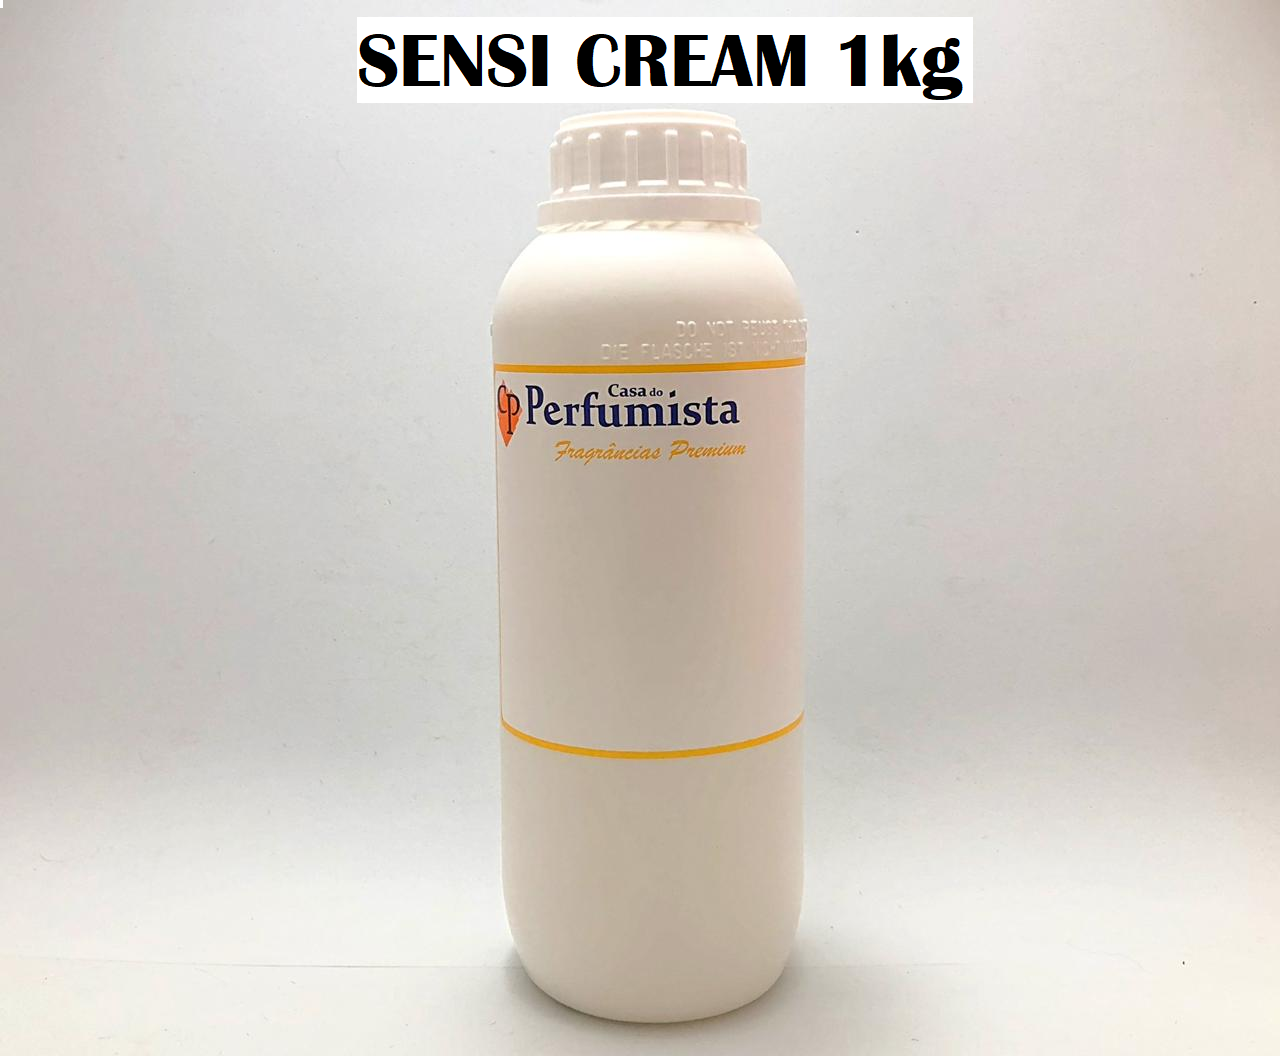 SENSI CREAM - 1kg